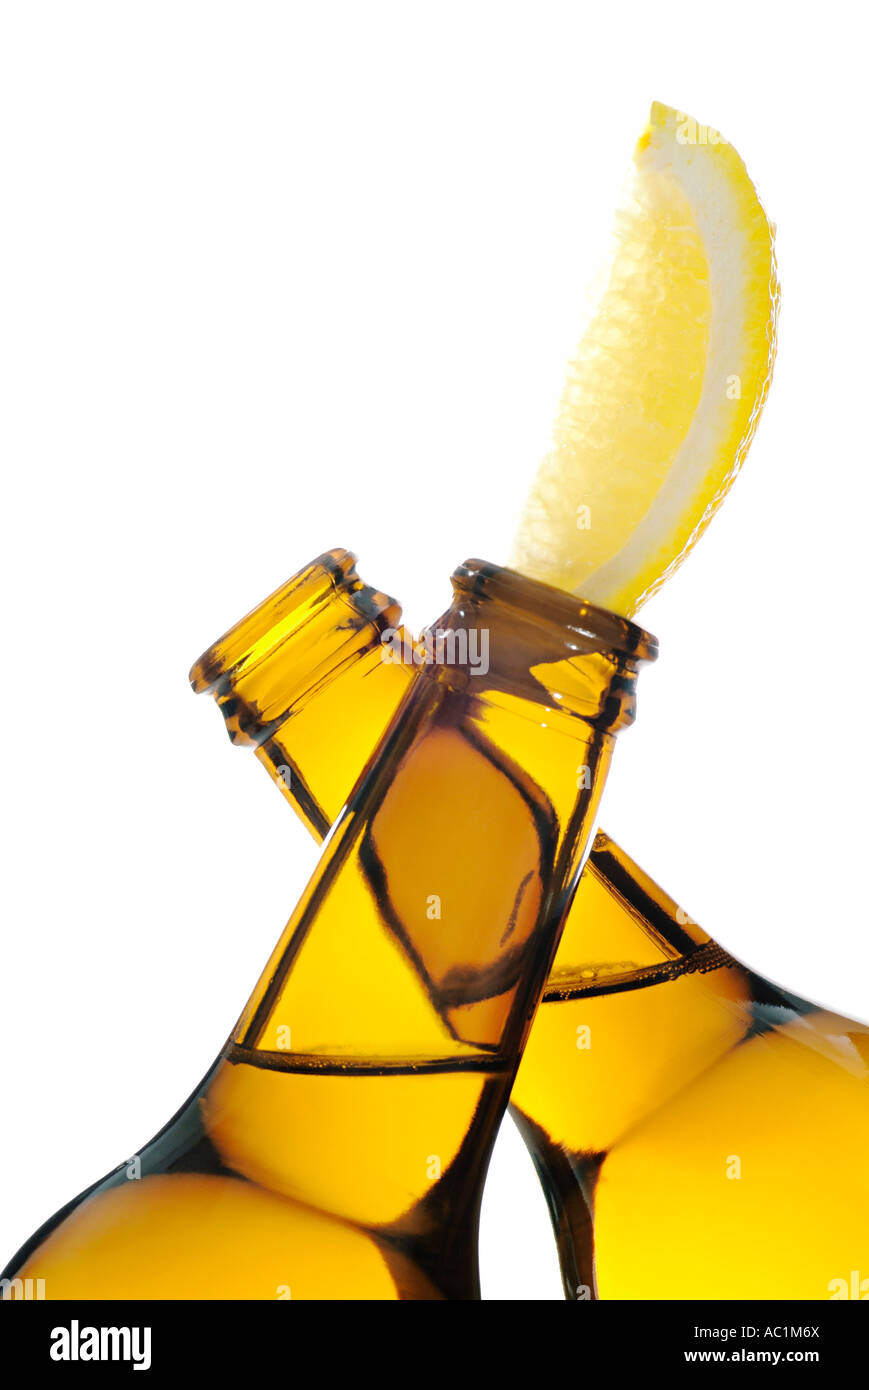 Bouteilles Alcopop avec une rondelle de citron un style à la mode de boisson alcoolisée conçue pour les jeunes Banque D'Images